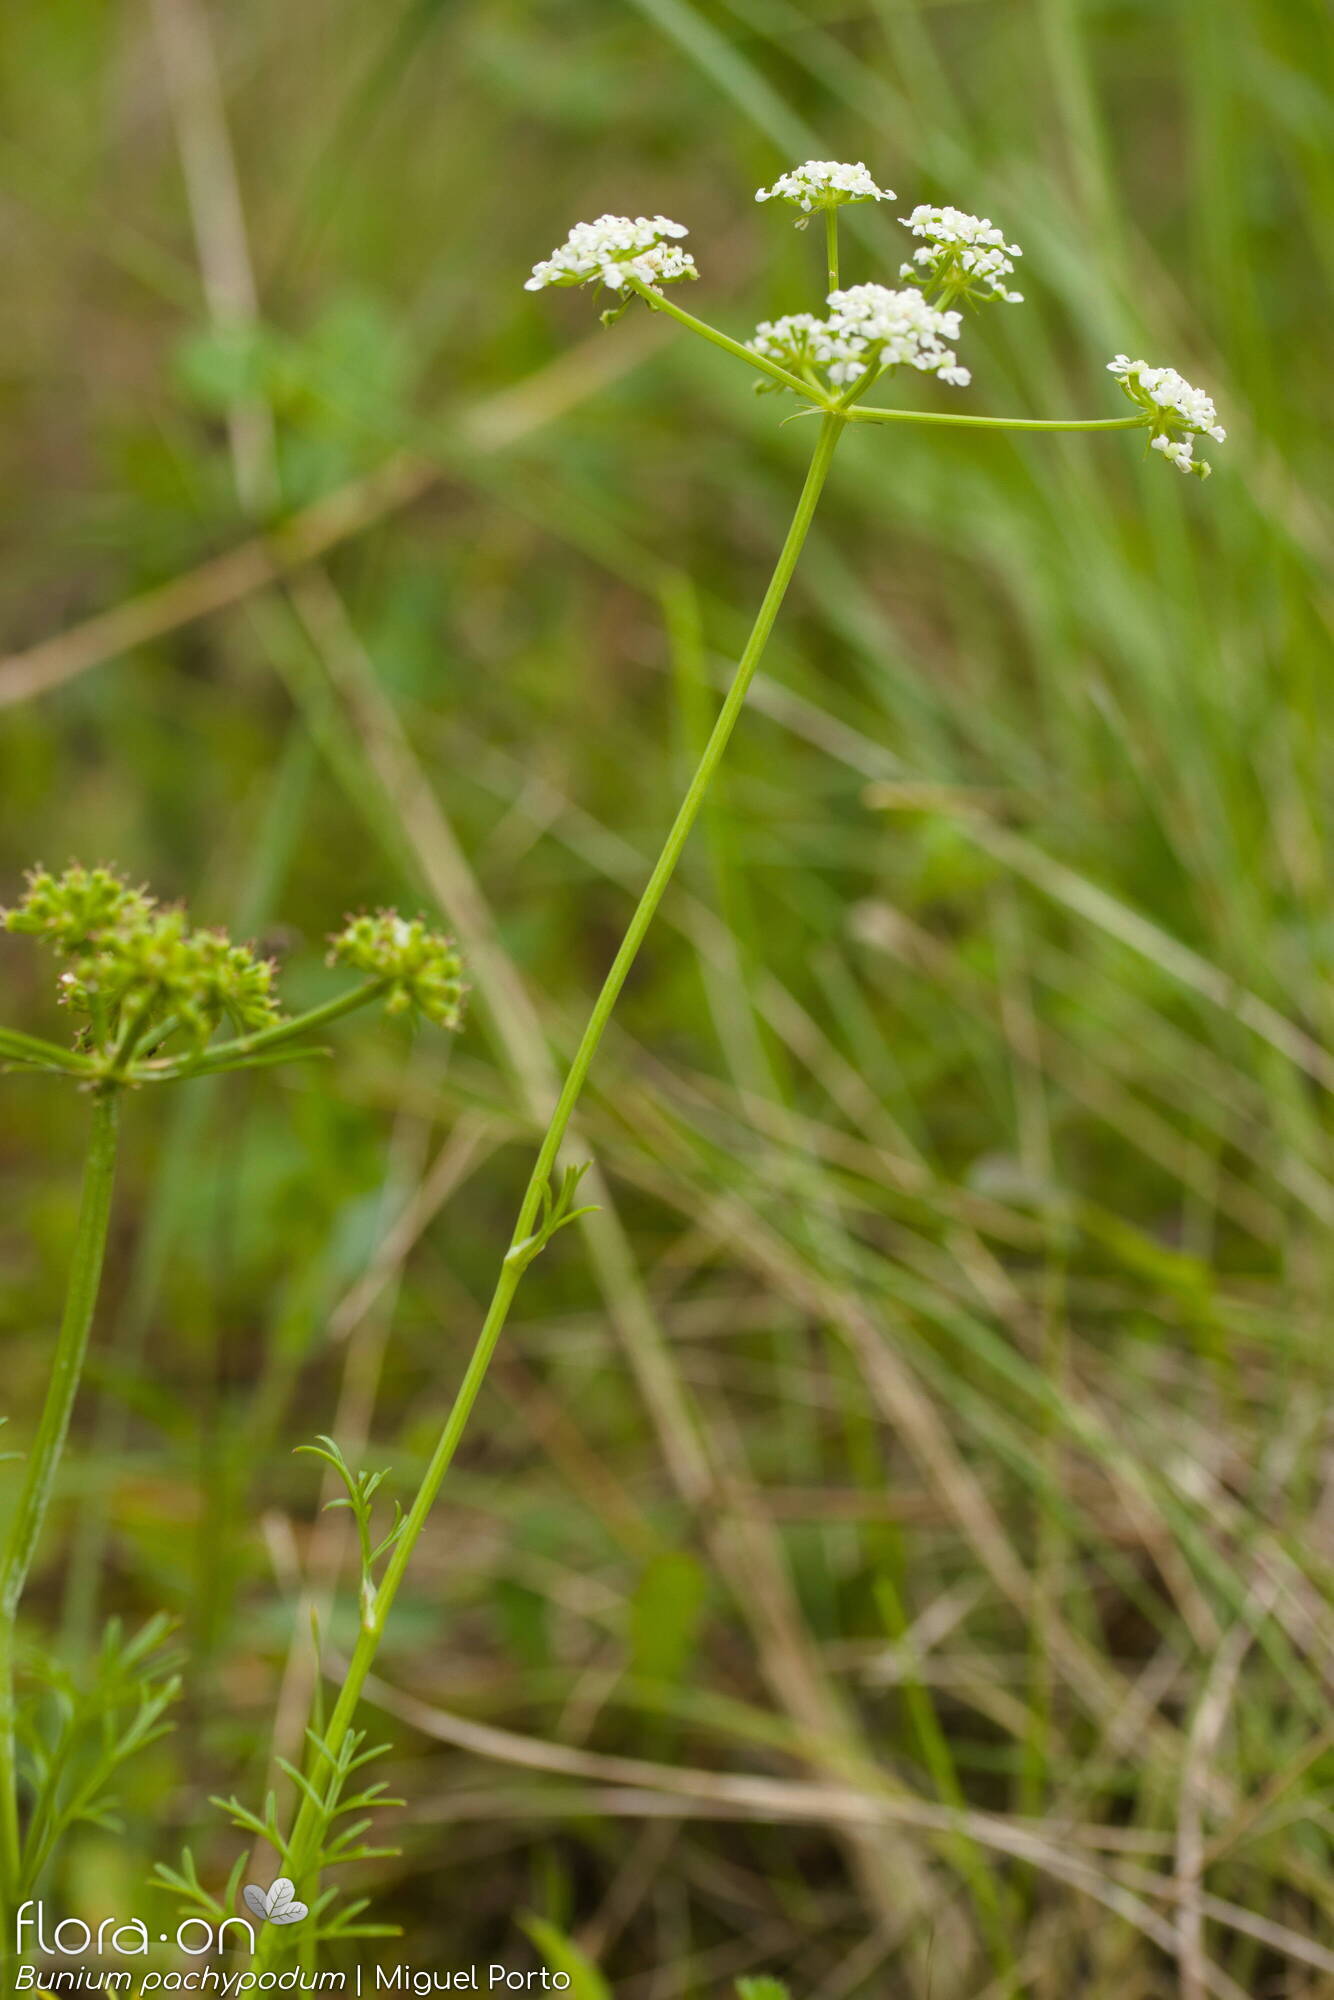 Bunium pachypodum - Flor (geral) | Miguel Porto; CC BY-NC 4.0